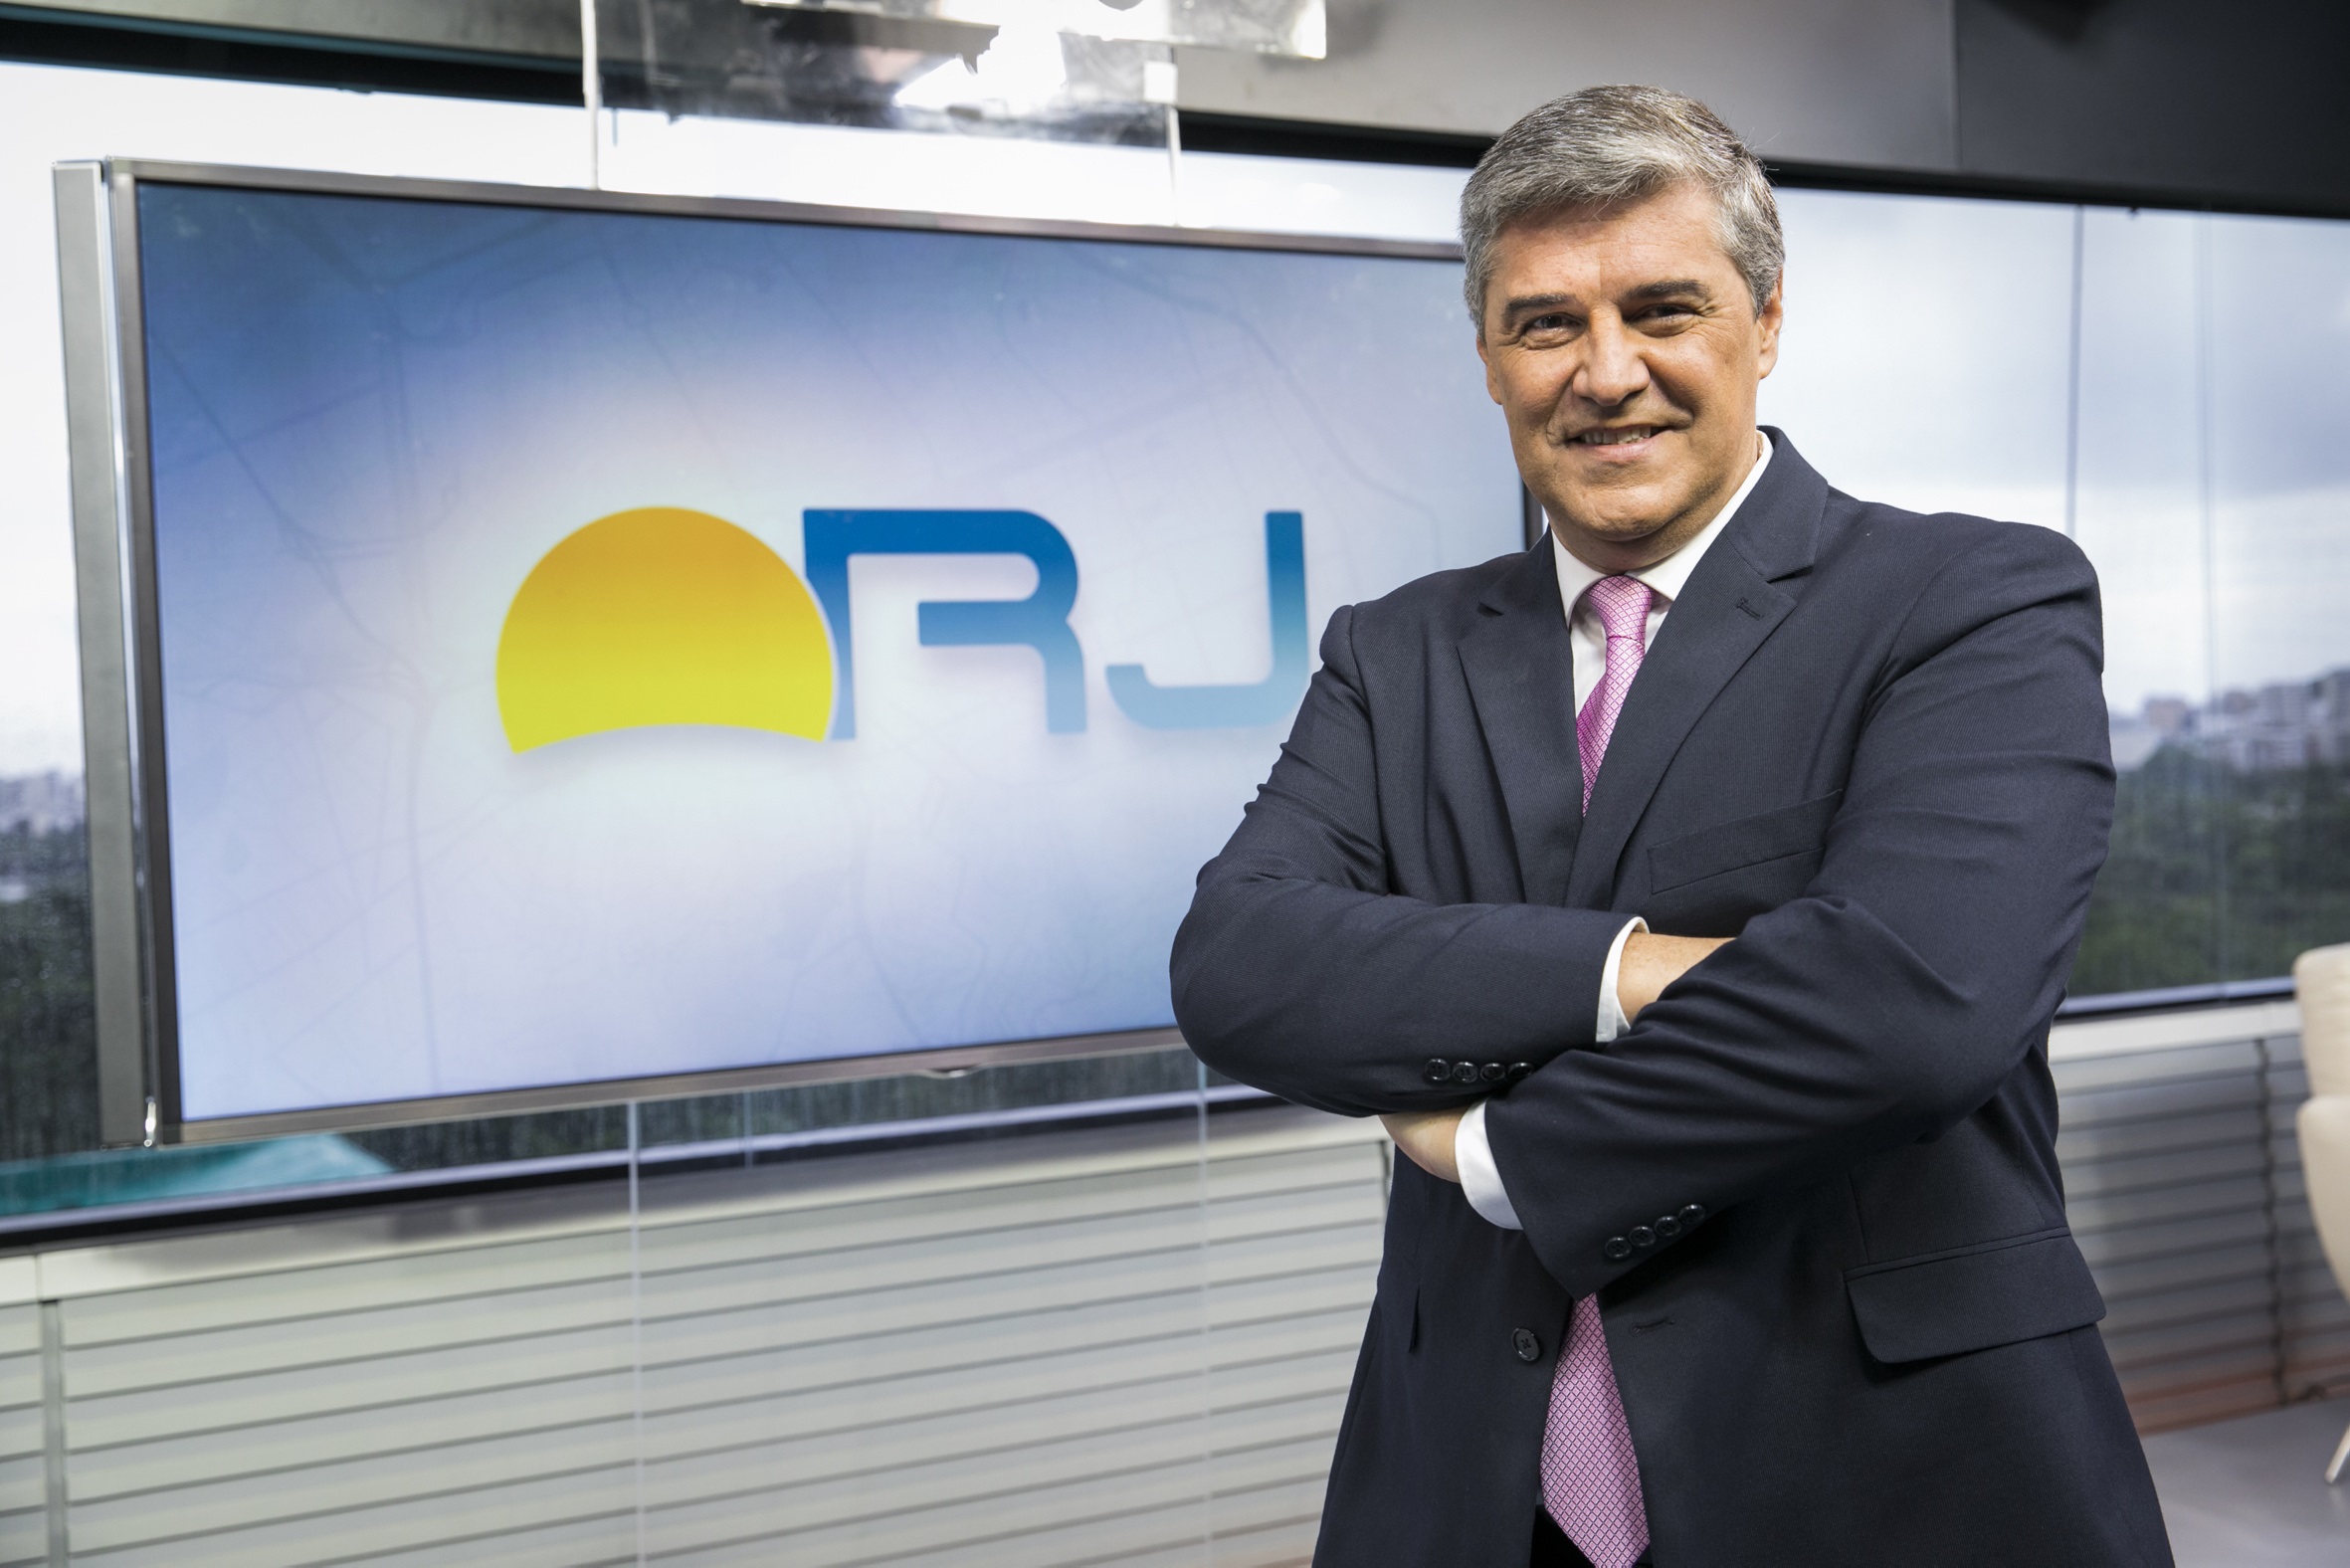 Jornais locais da Rede Globo no Rio de Janeiro estreiam nova identidade  visual | TELA VIVA News